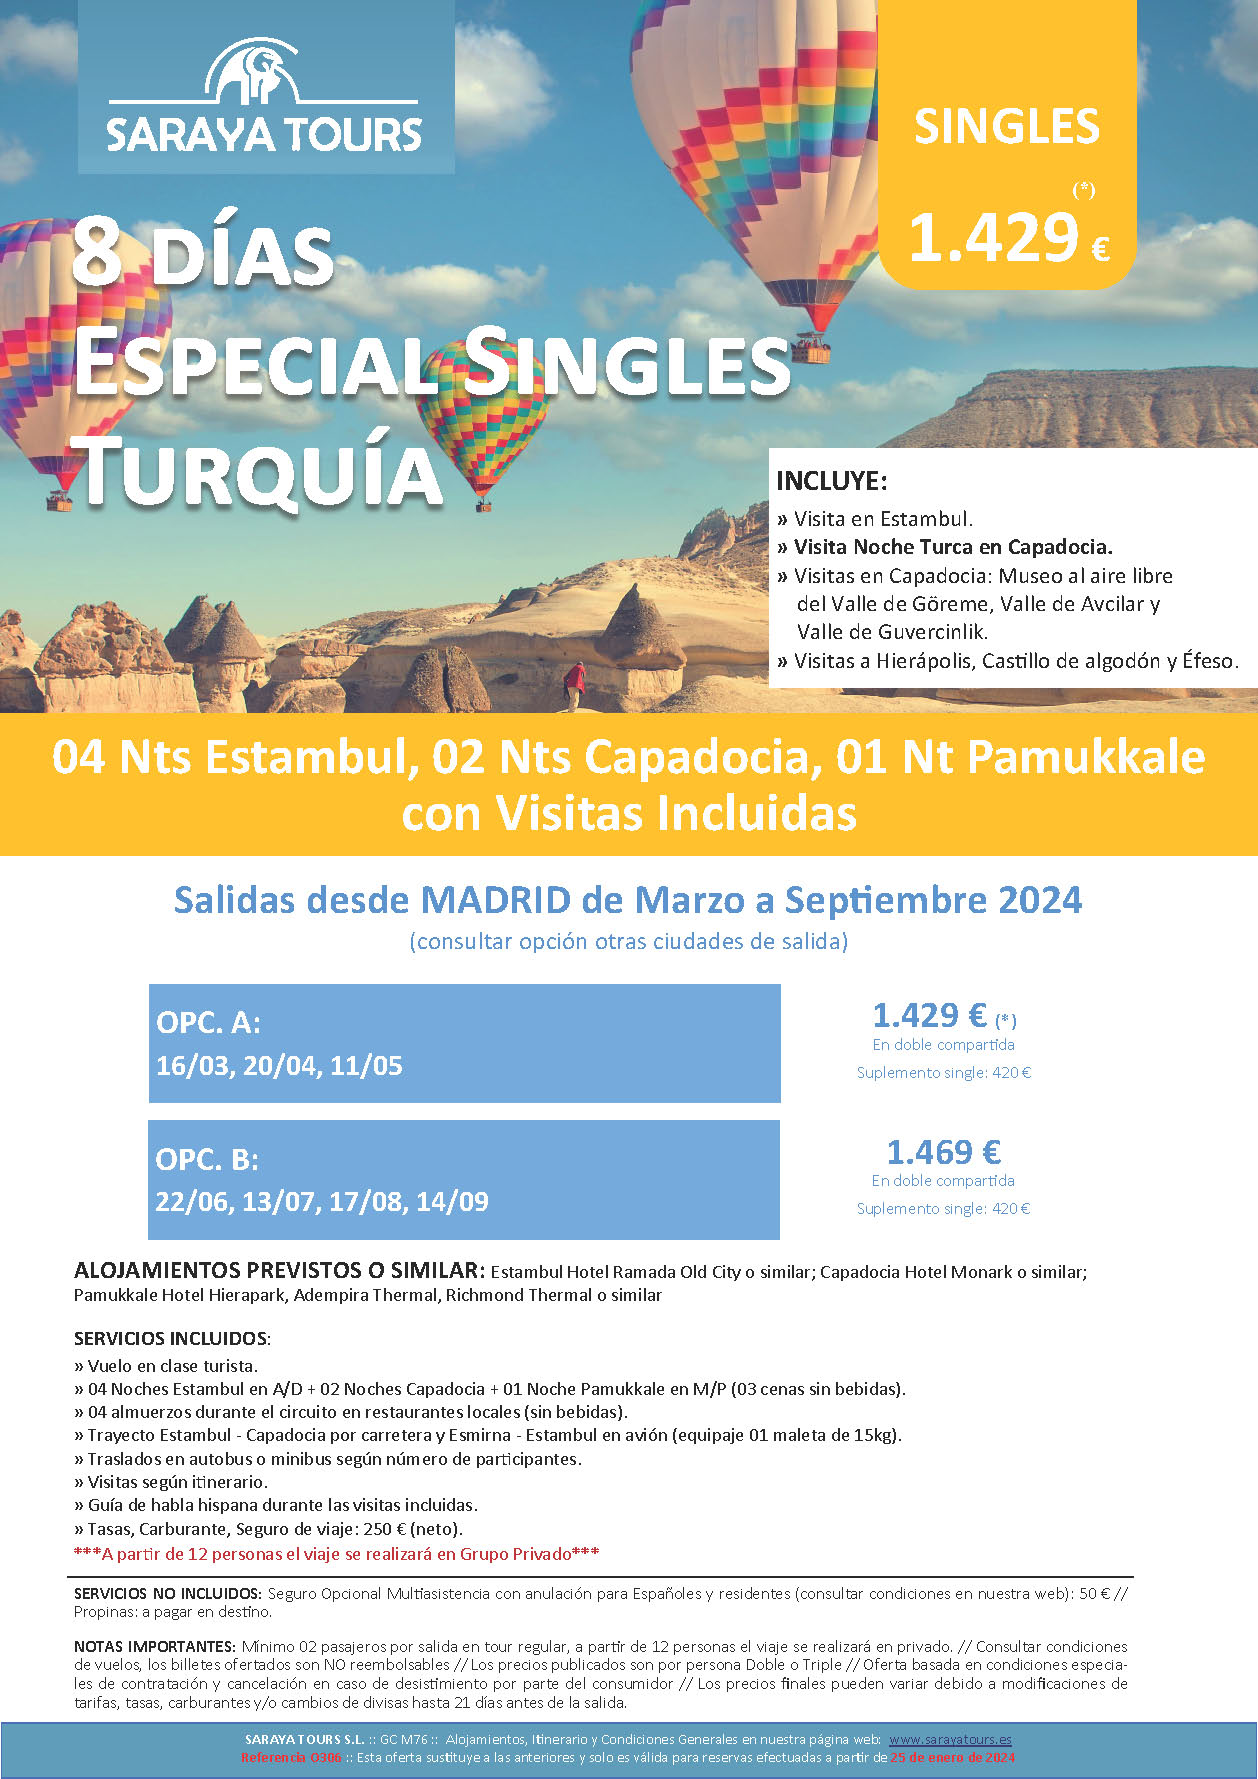 Oferta Saraya Tours Circuito Turquia 8 dias Especial Singles salidas Abril a Septiembre 2024 en vuelo directo desde Madrid